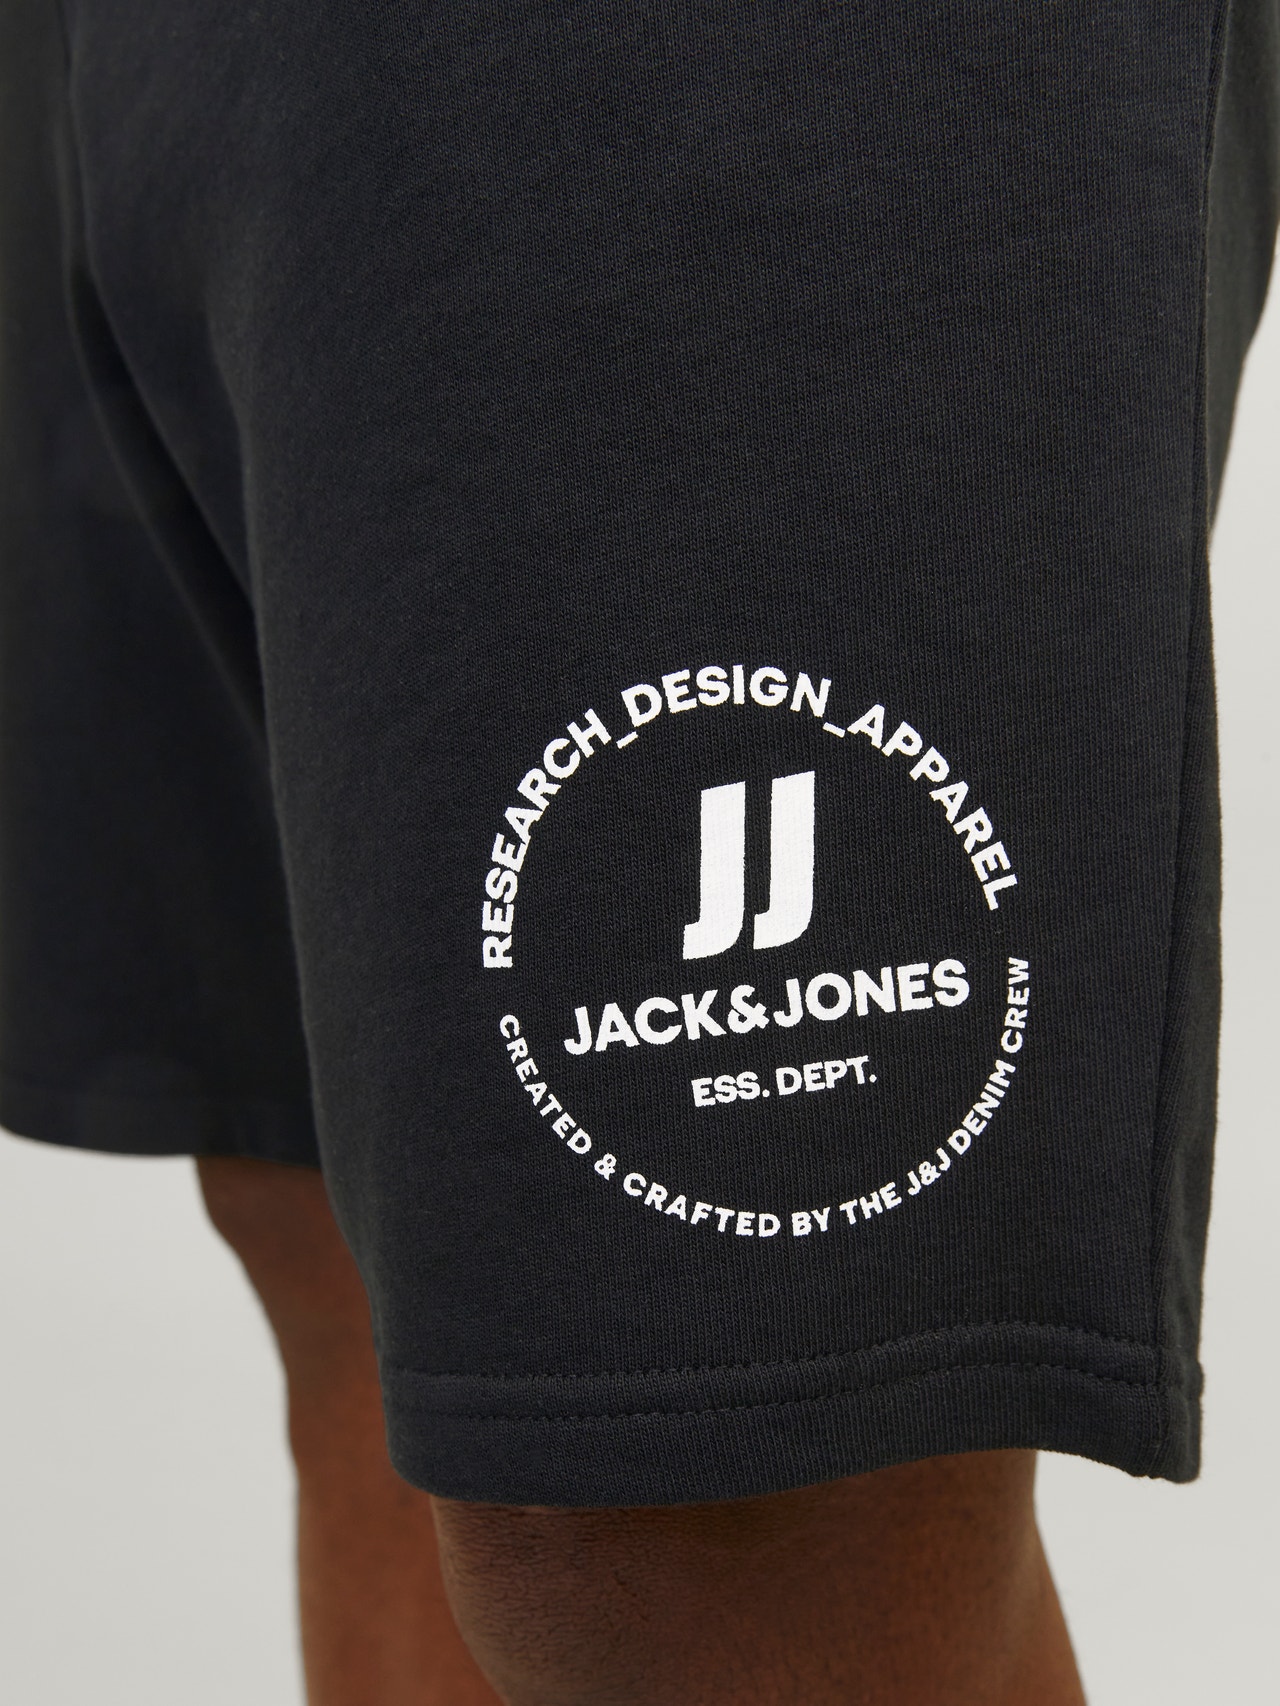 Jack & Jones Plus Size Comfort Fit Sweat shorts -Black - 12253888